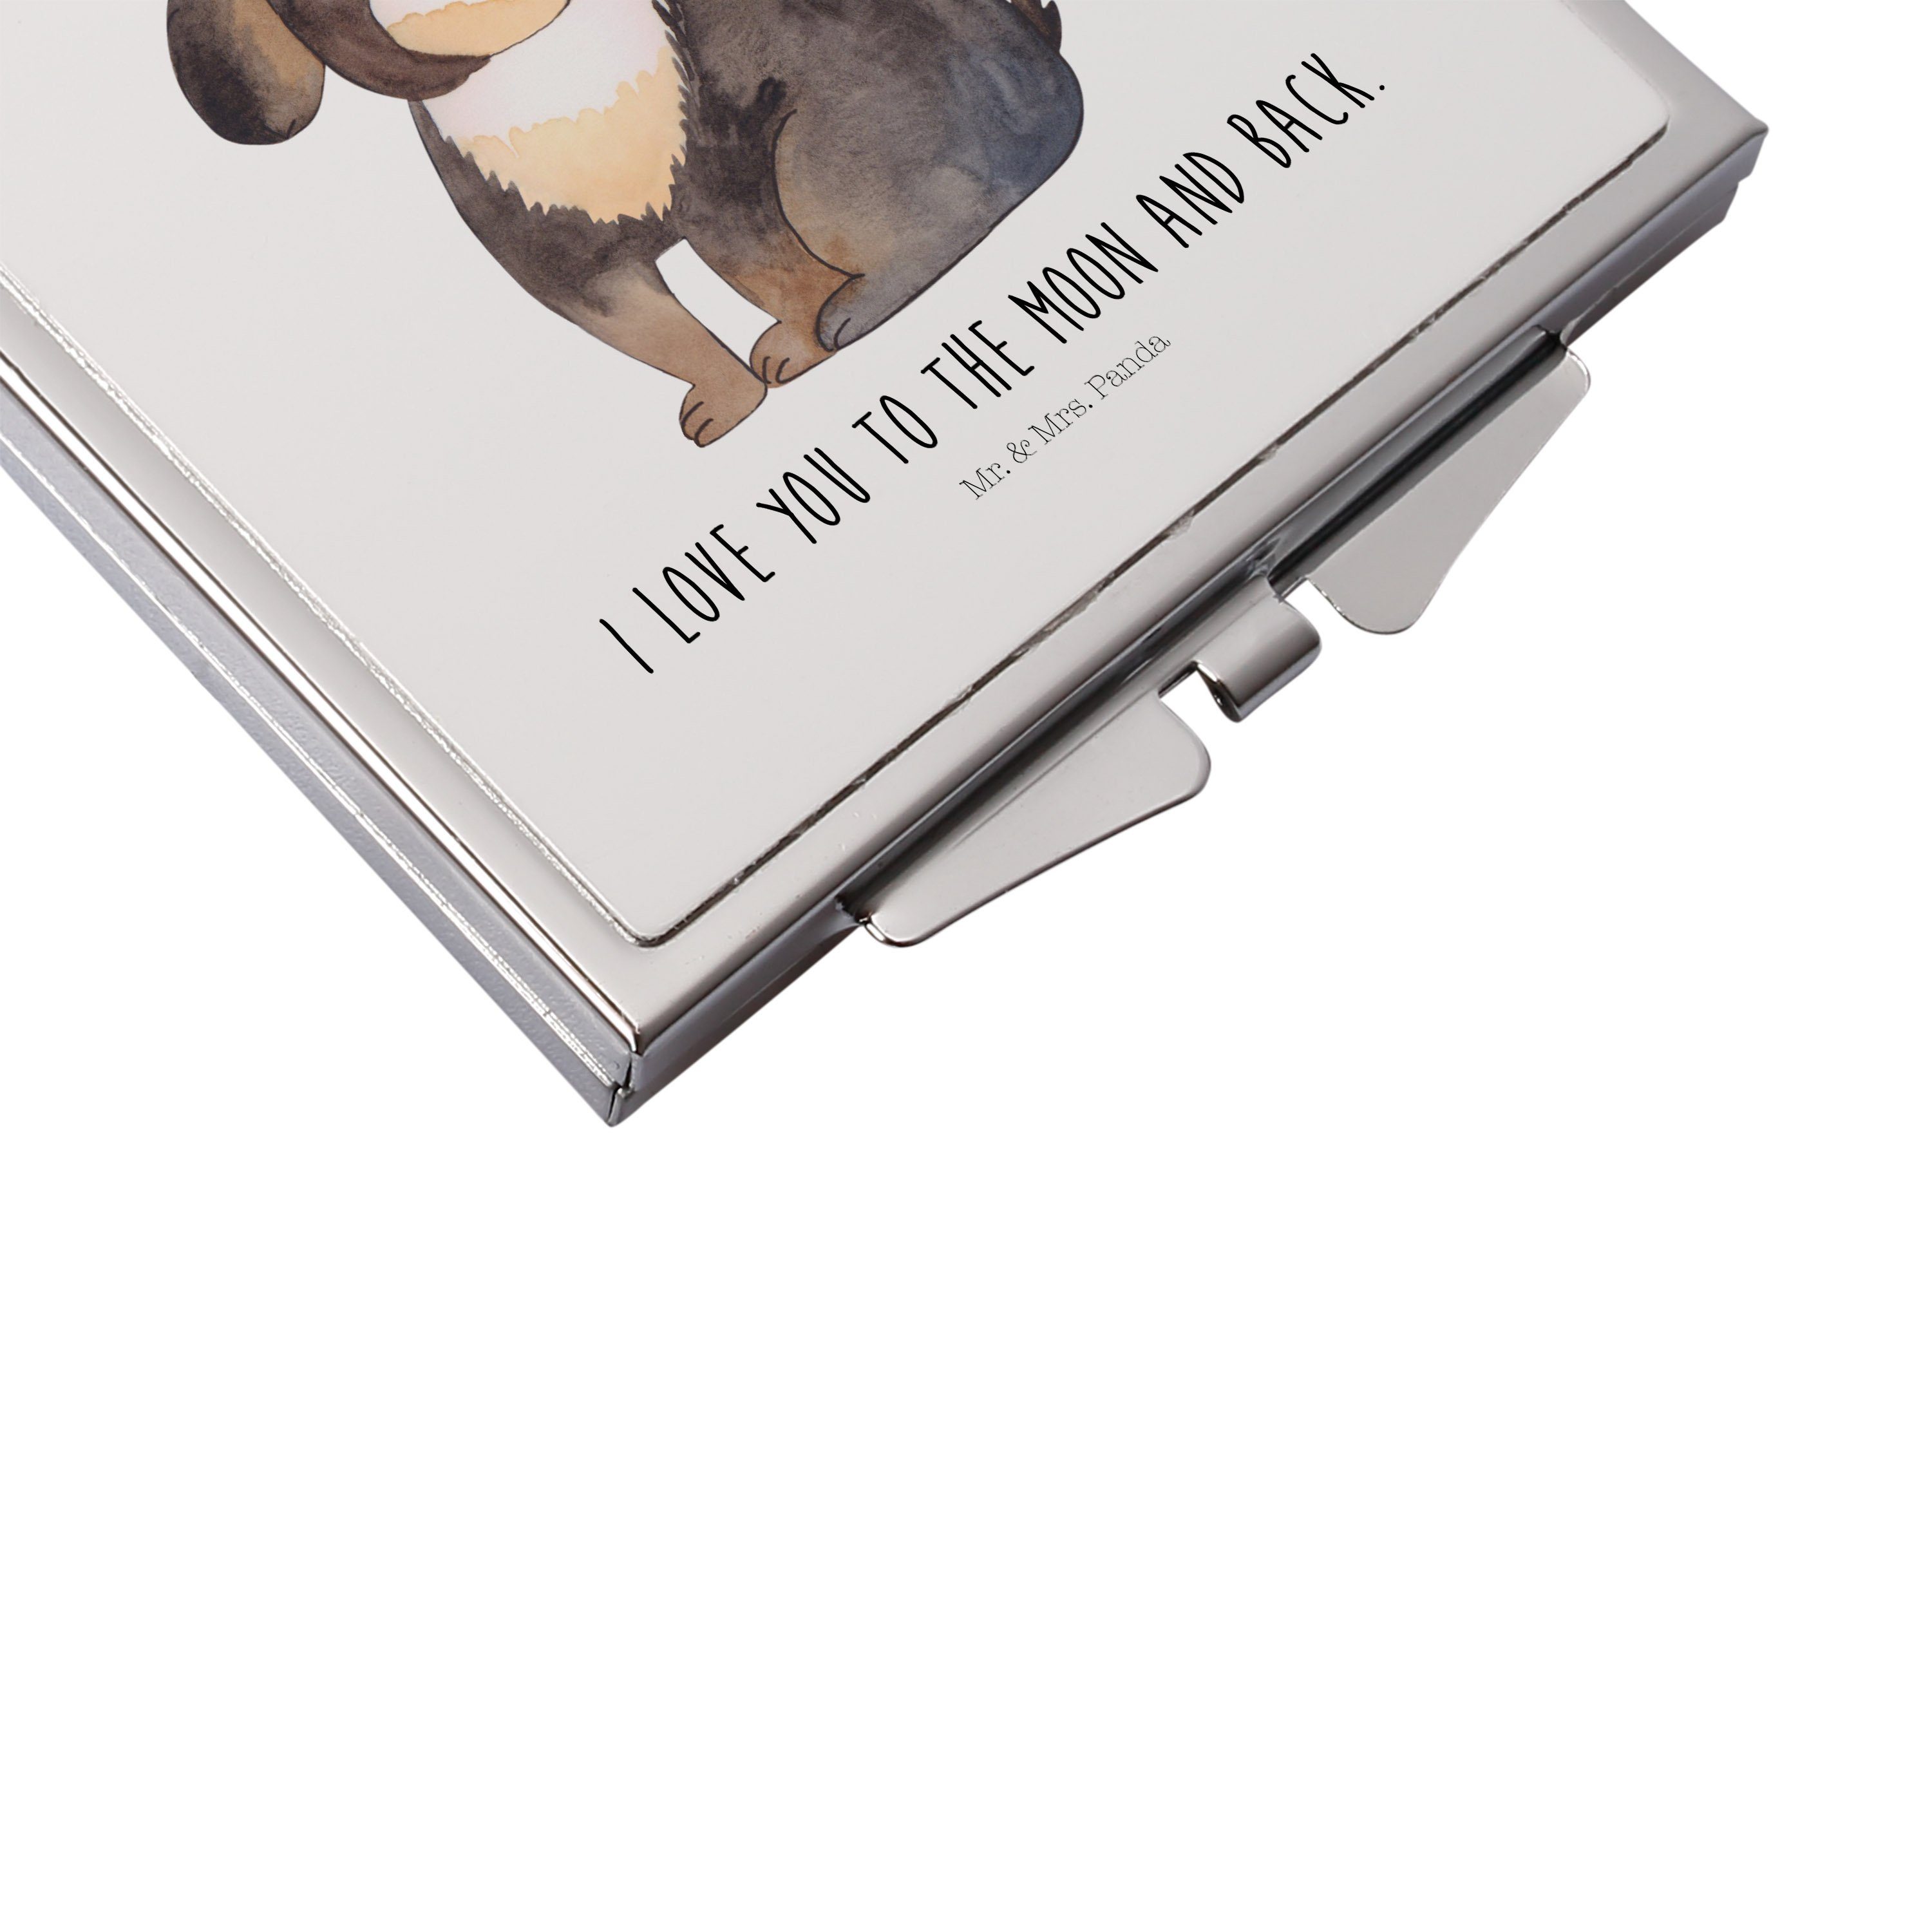 Mr. & Mrs. Panda Kosmetikspiegel Hund (1-St) - silber, Geschenk, Weiß flauschig, - Schminkspiegel, entspannt